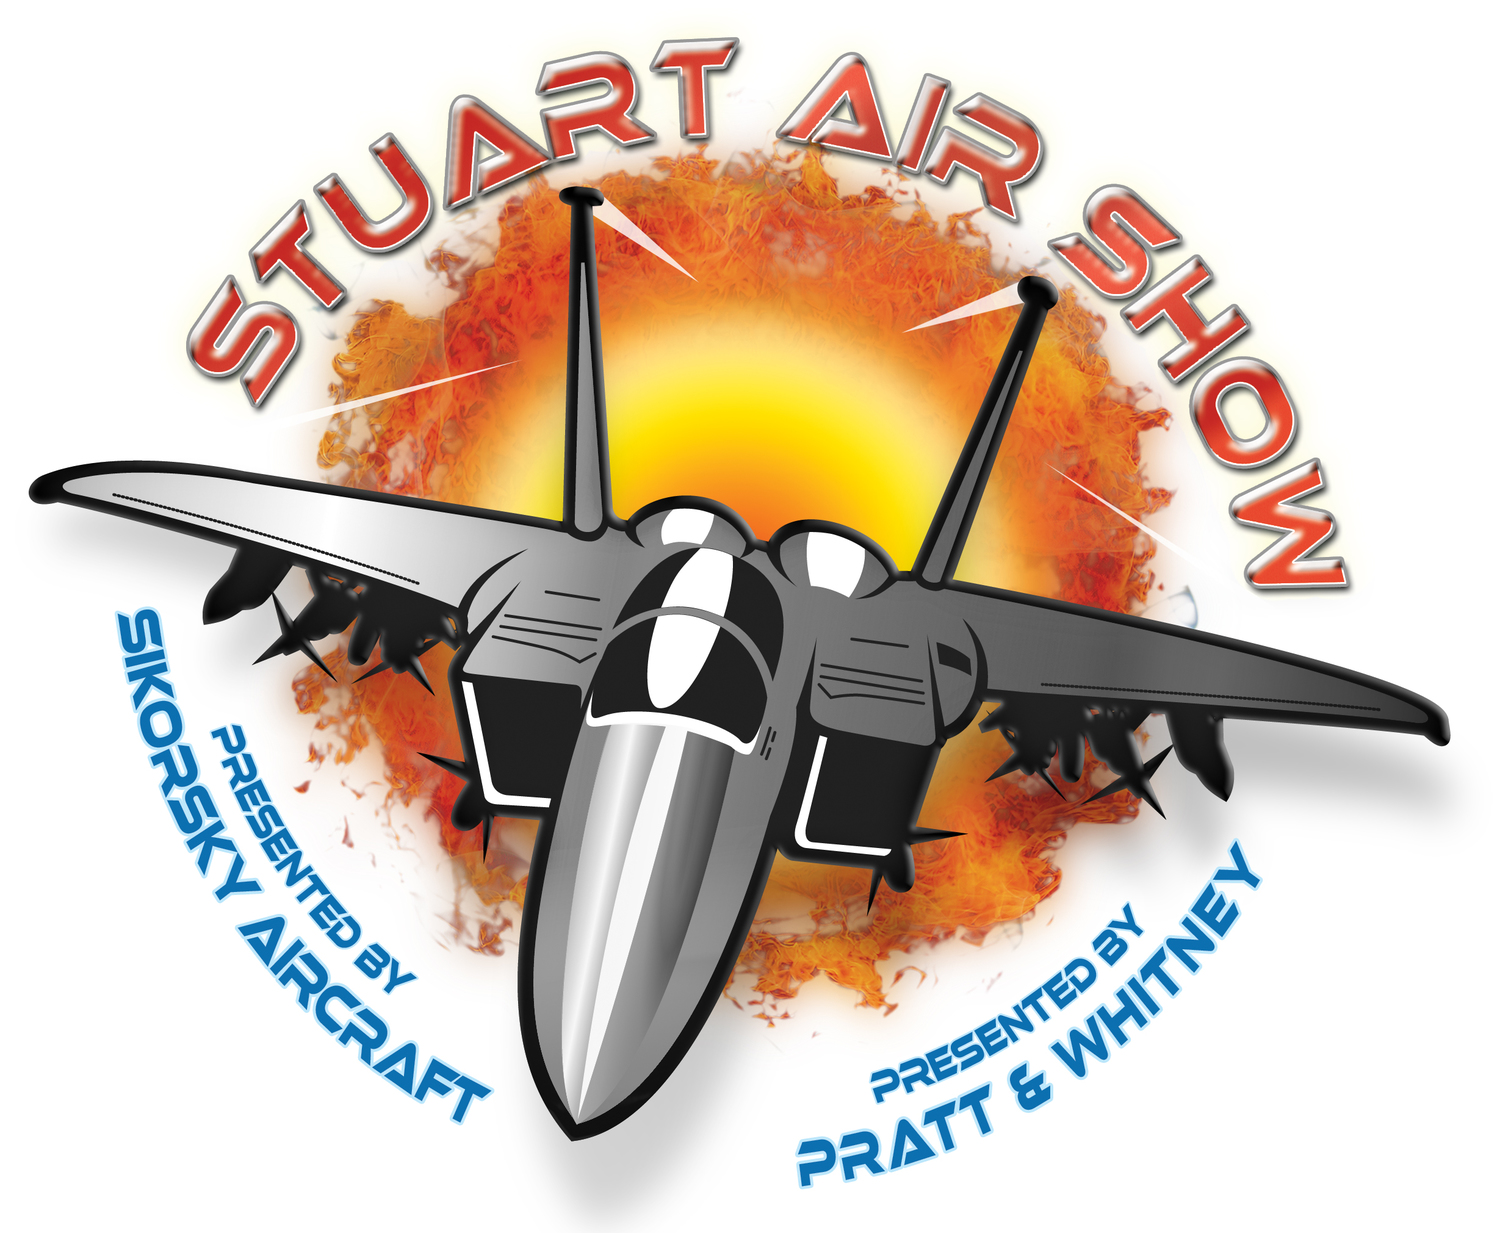 2016 Stuart Air Show